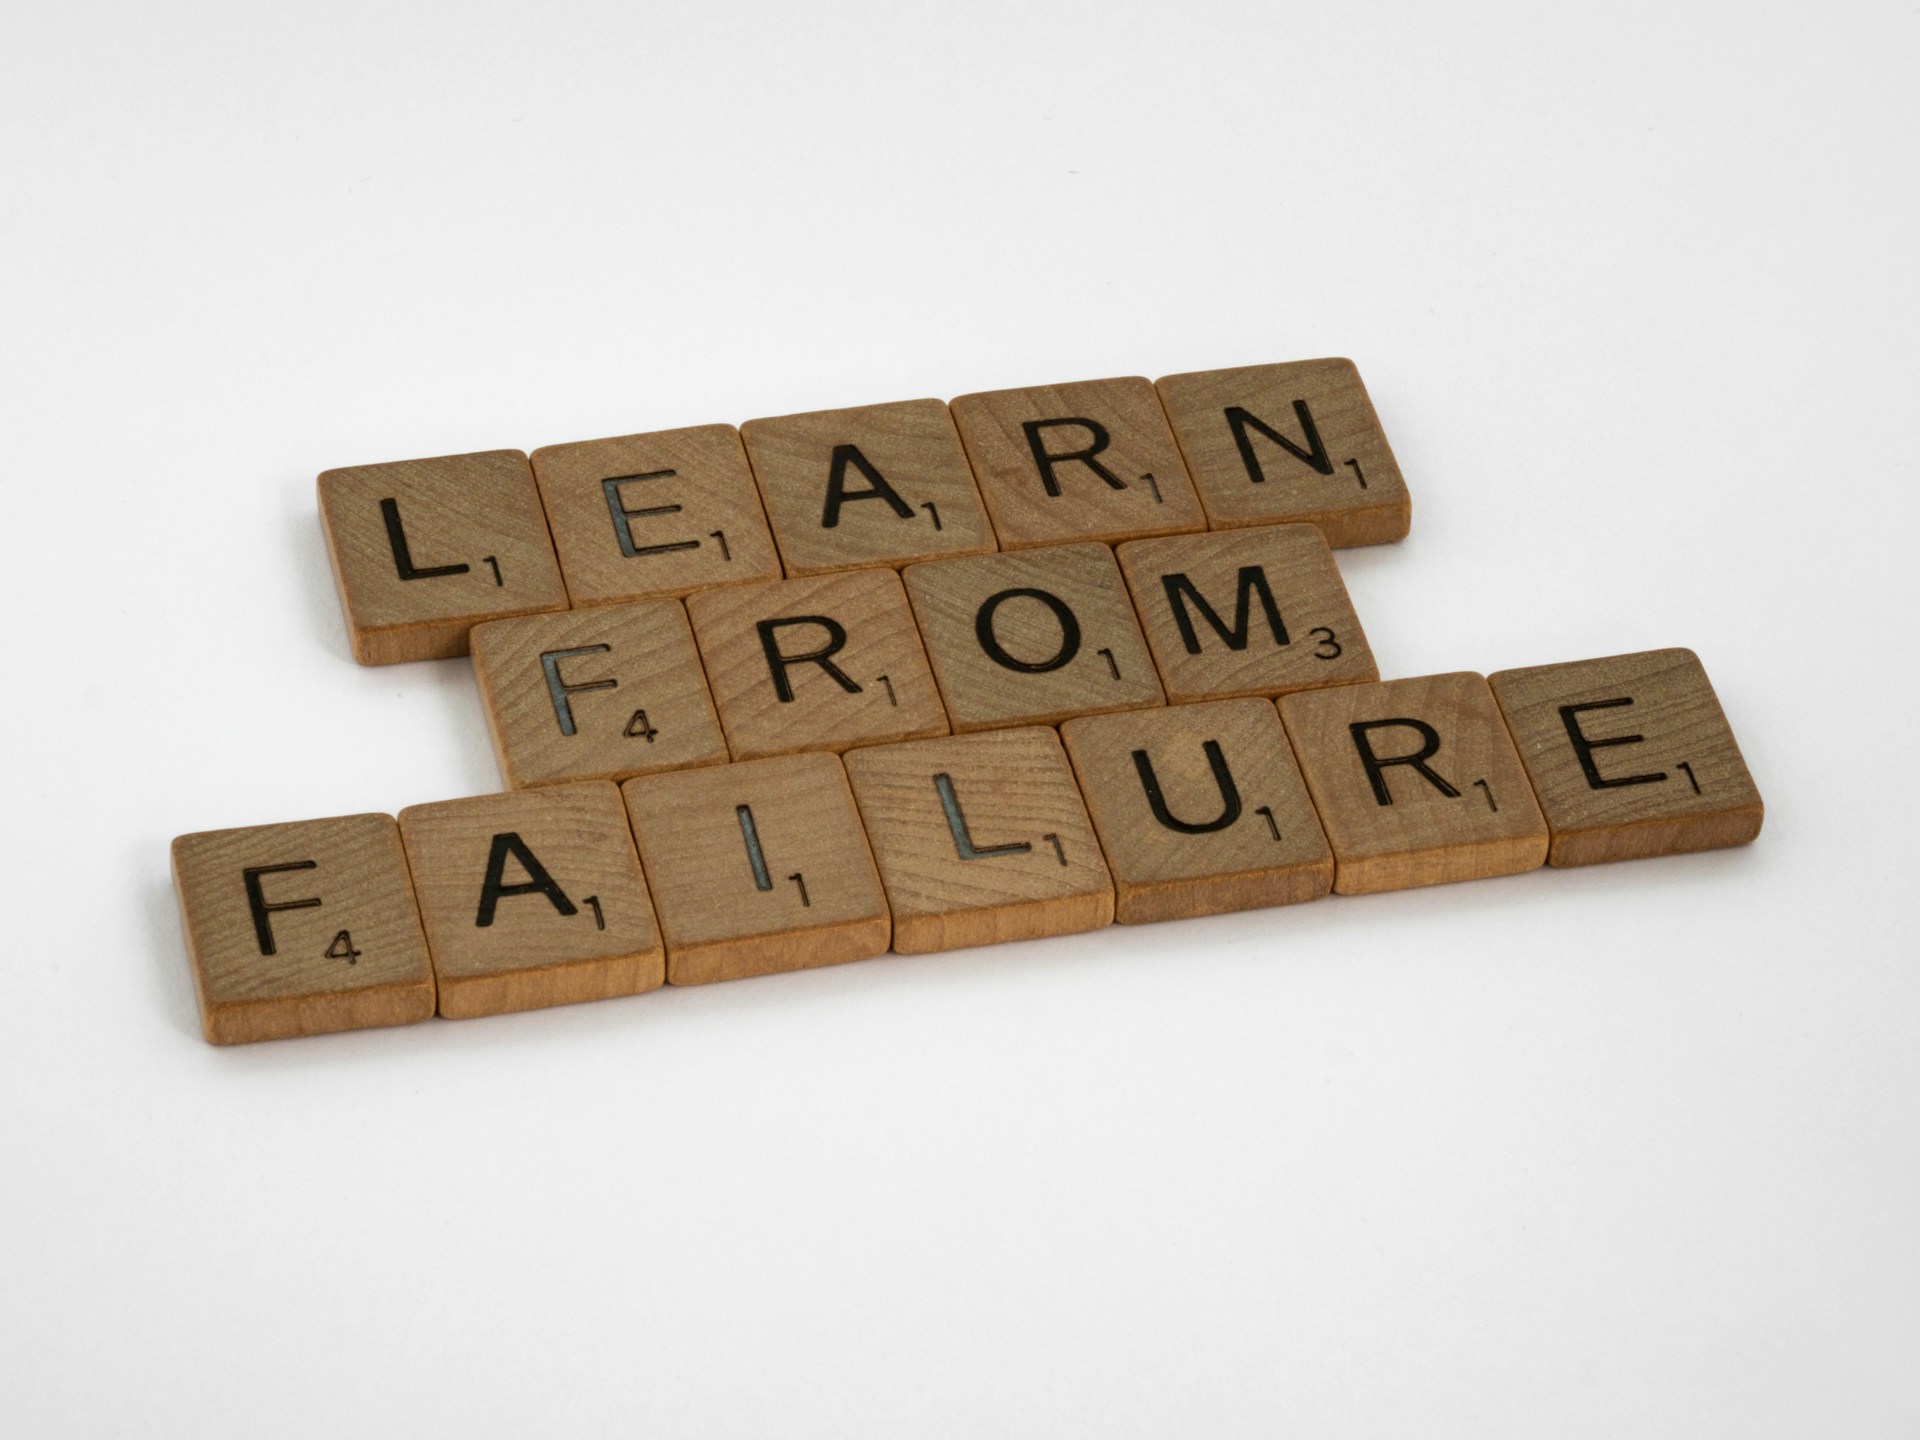 Todos podemos aprender de los fracasos.